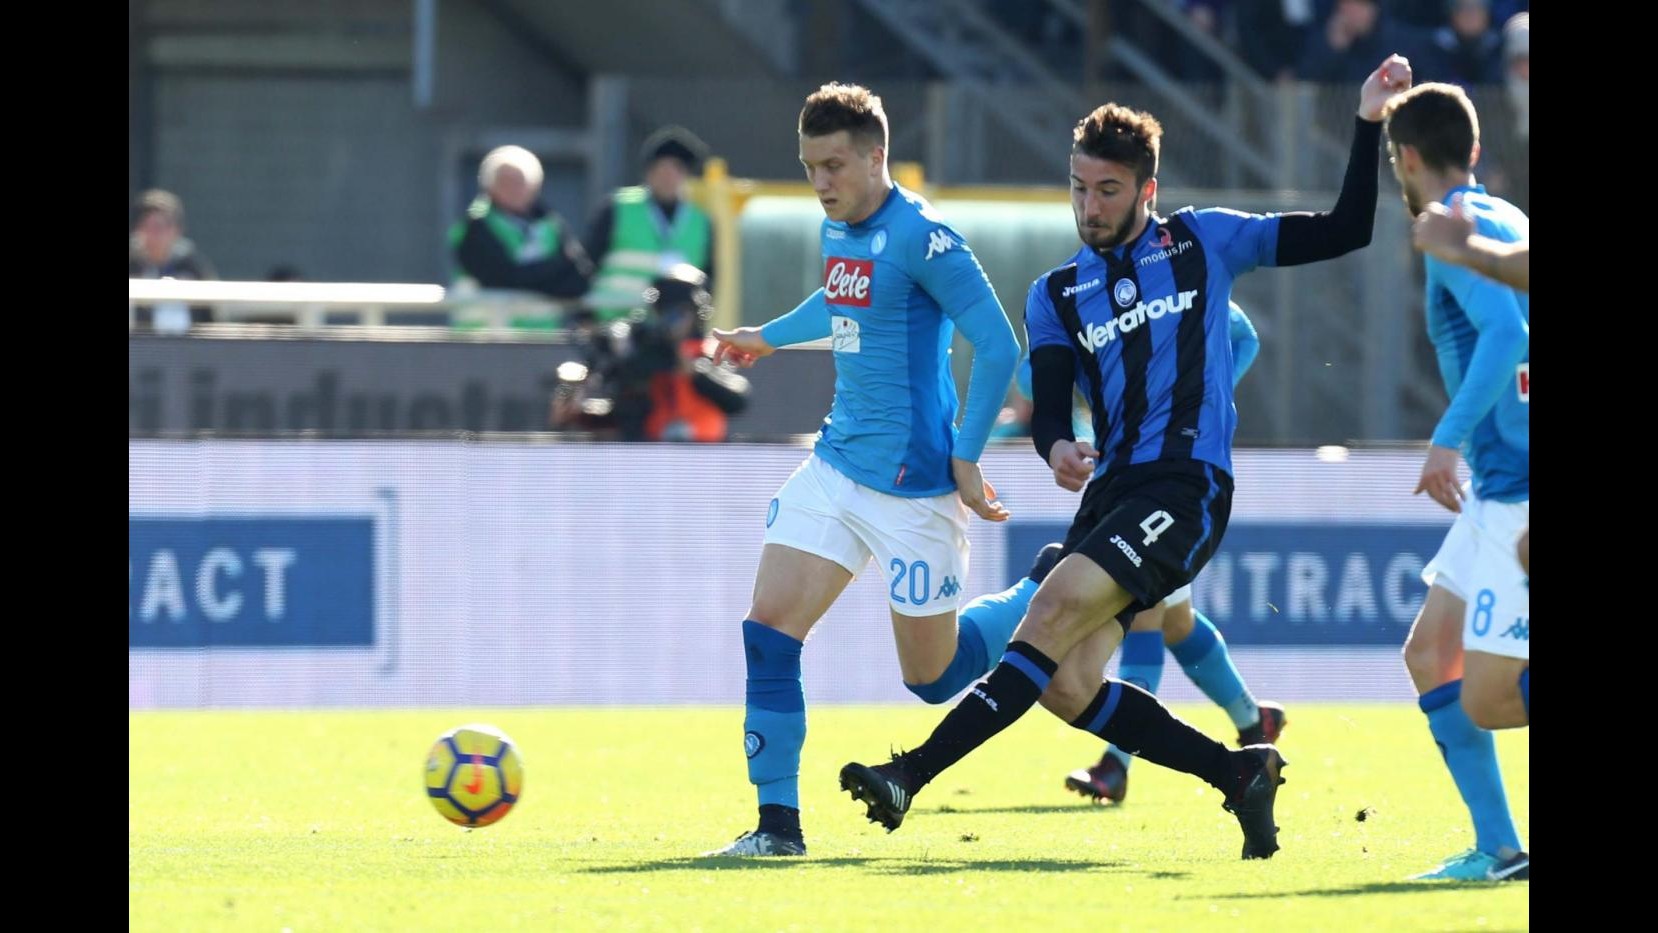 Serie A, Atalanta-Napoli 0-1 | IL FOTORACCONTO